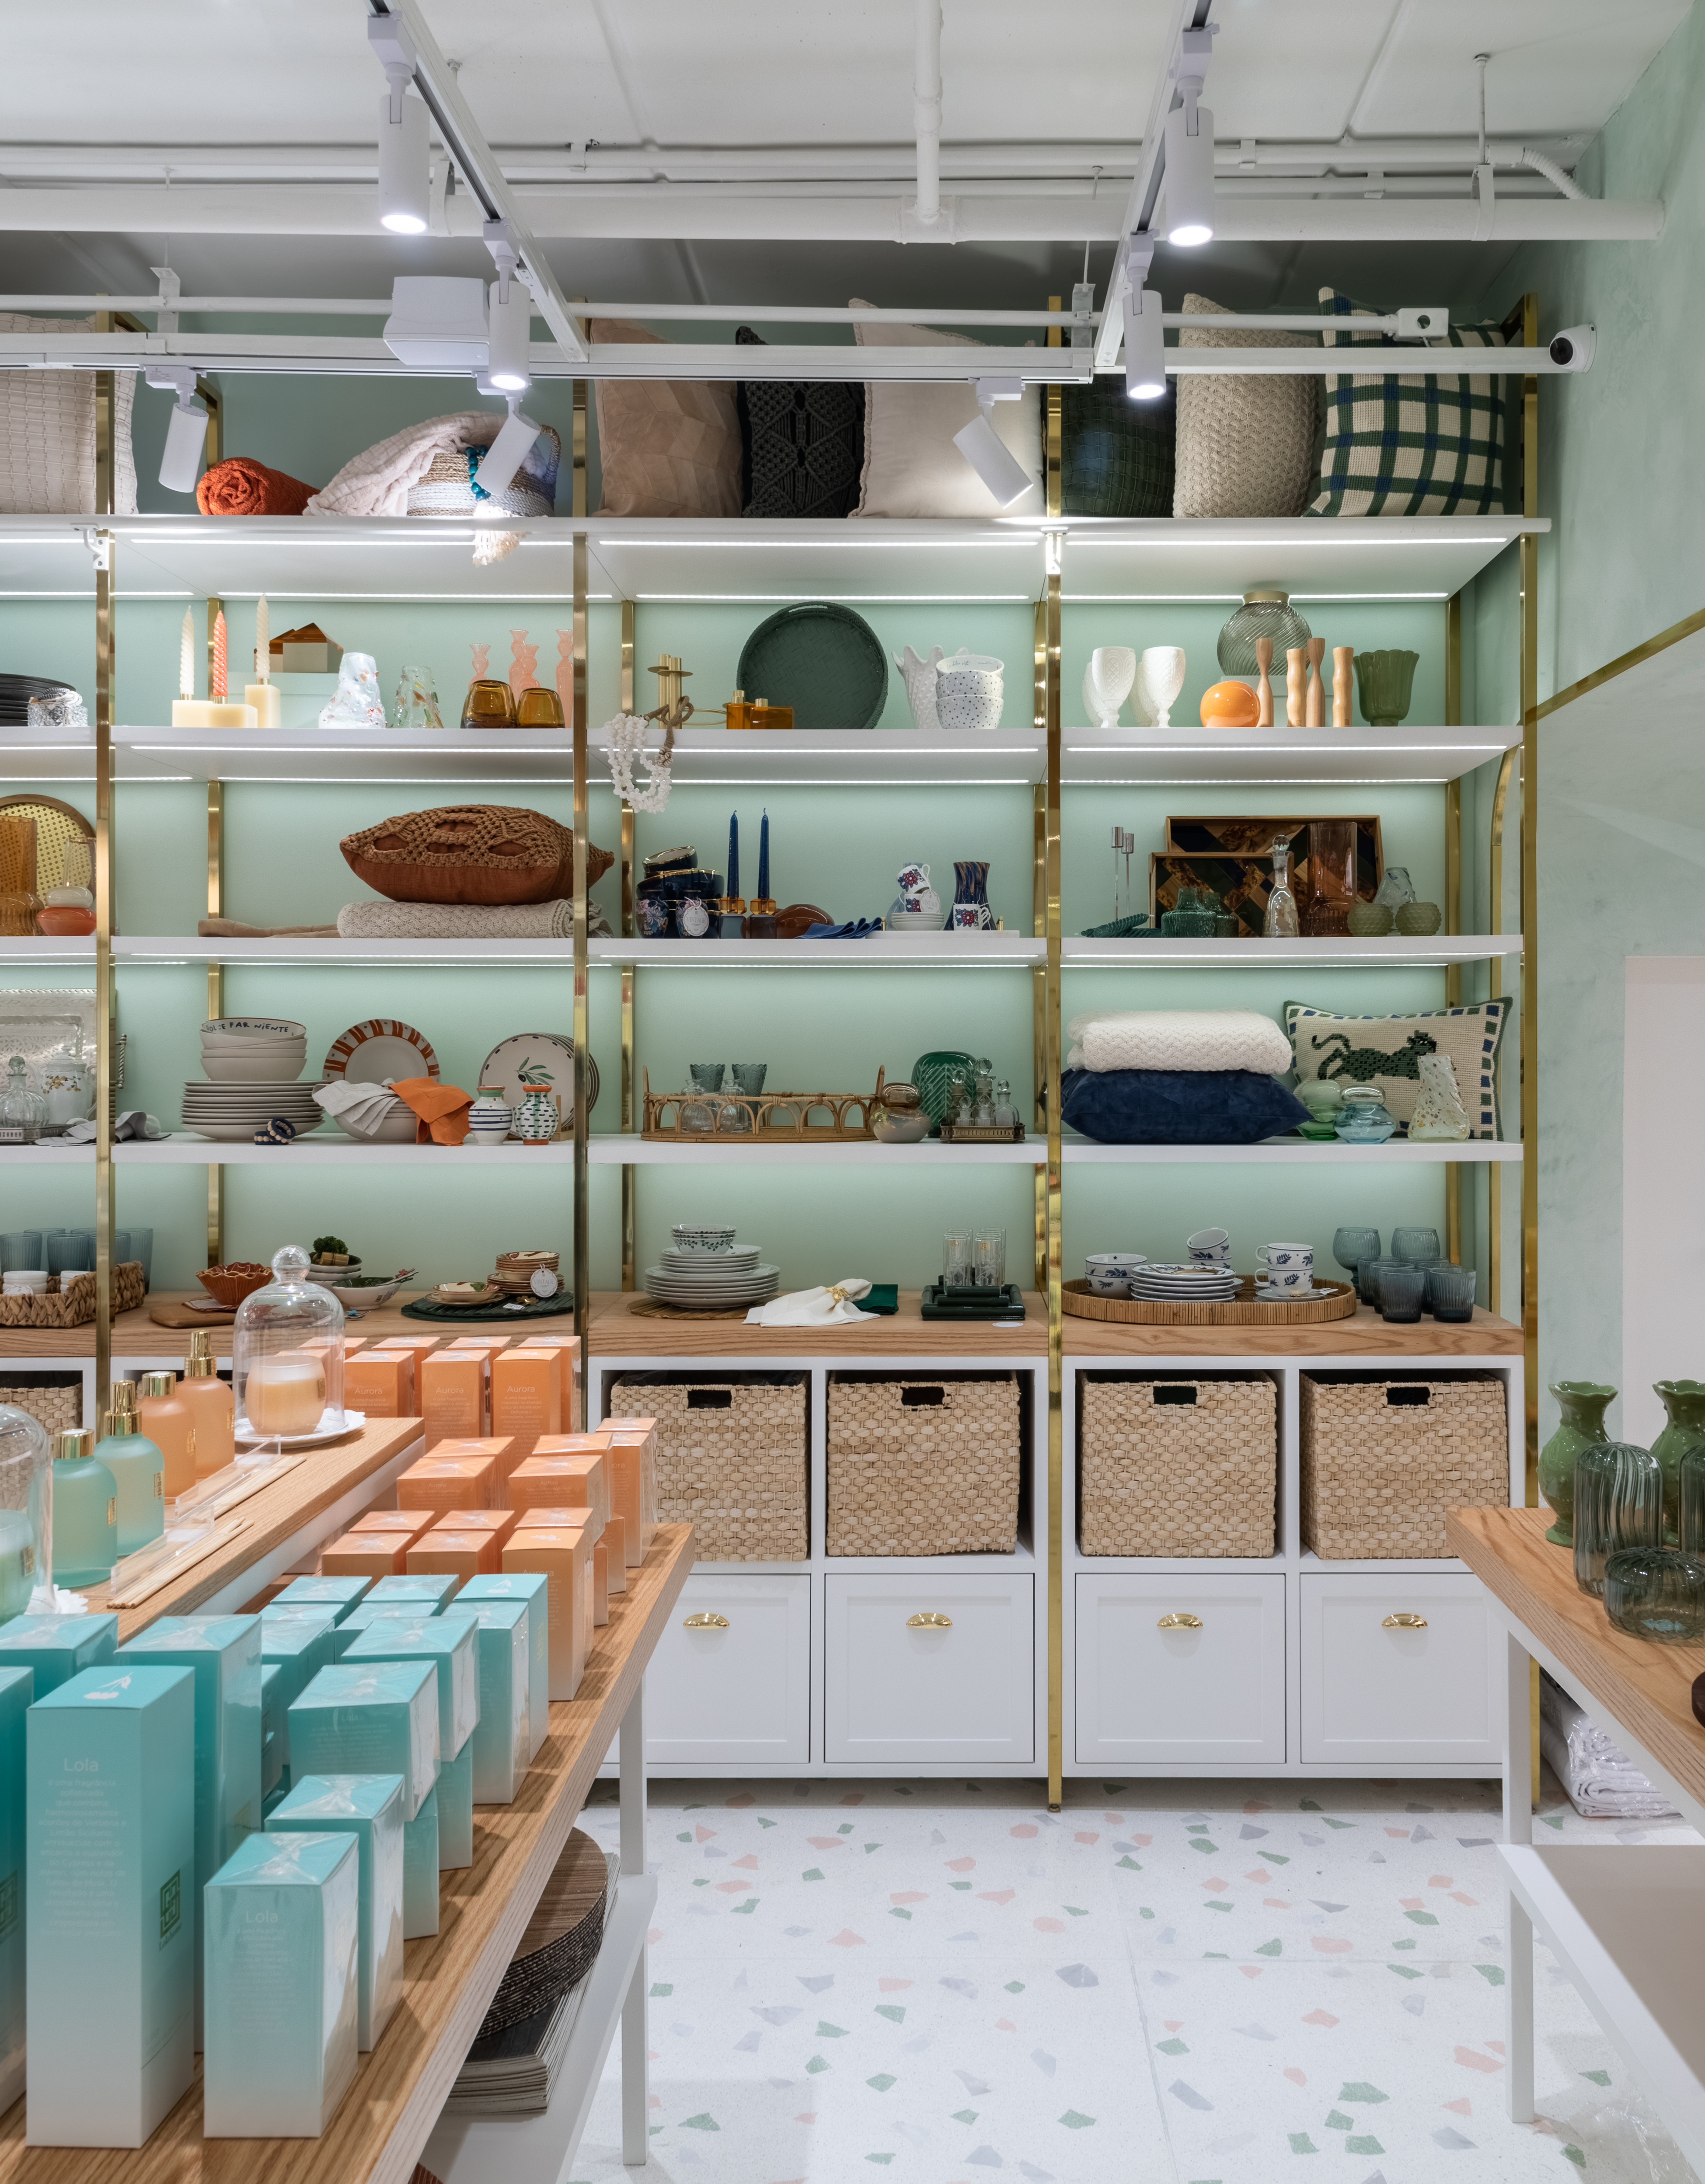 La foto muestra un estante verde claro lleno de utensilios domésticos y de cocina.